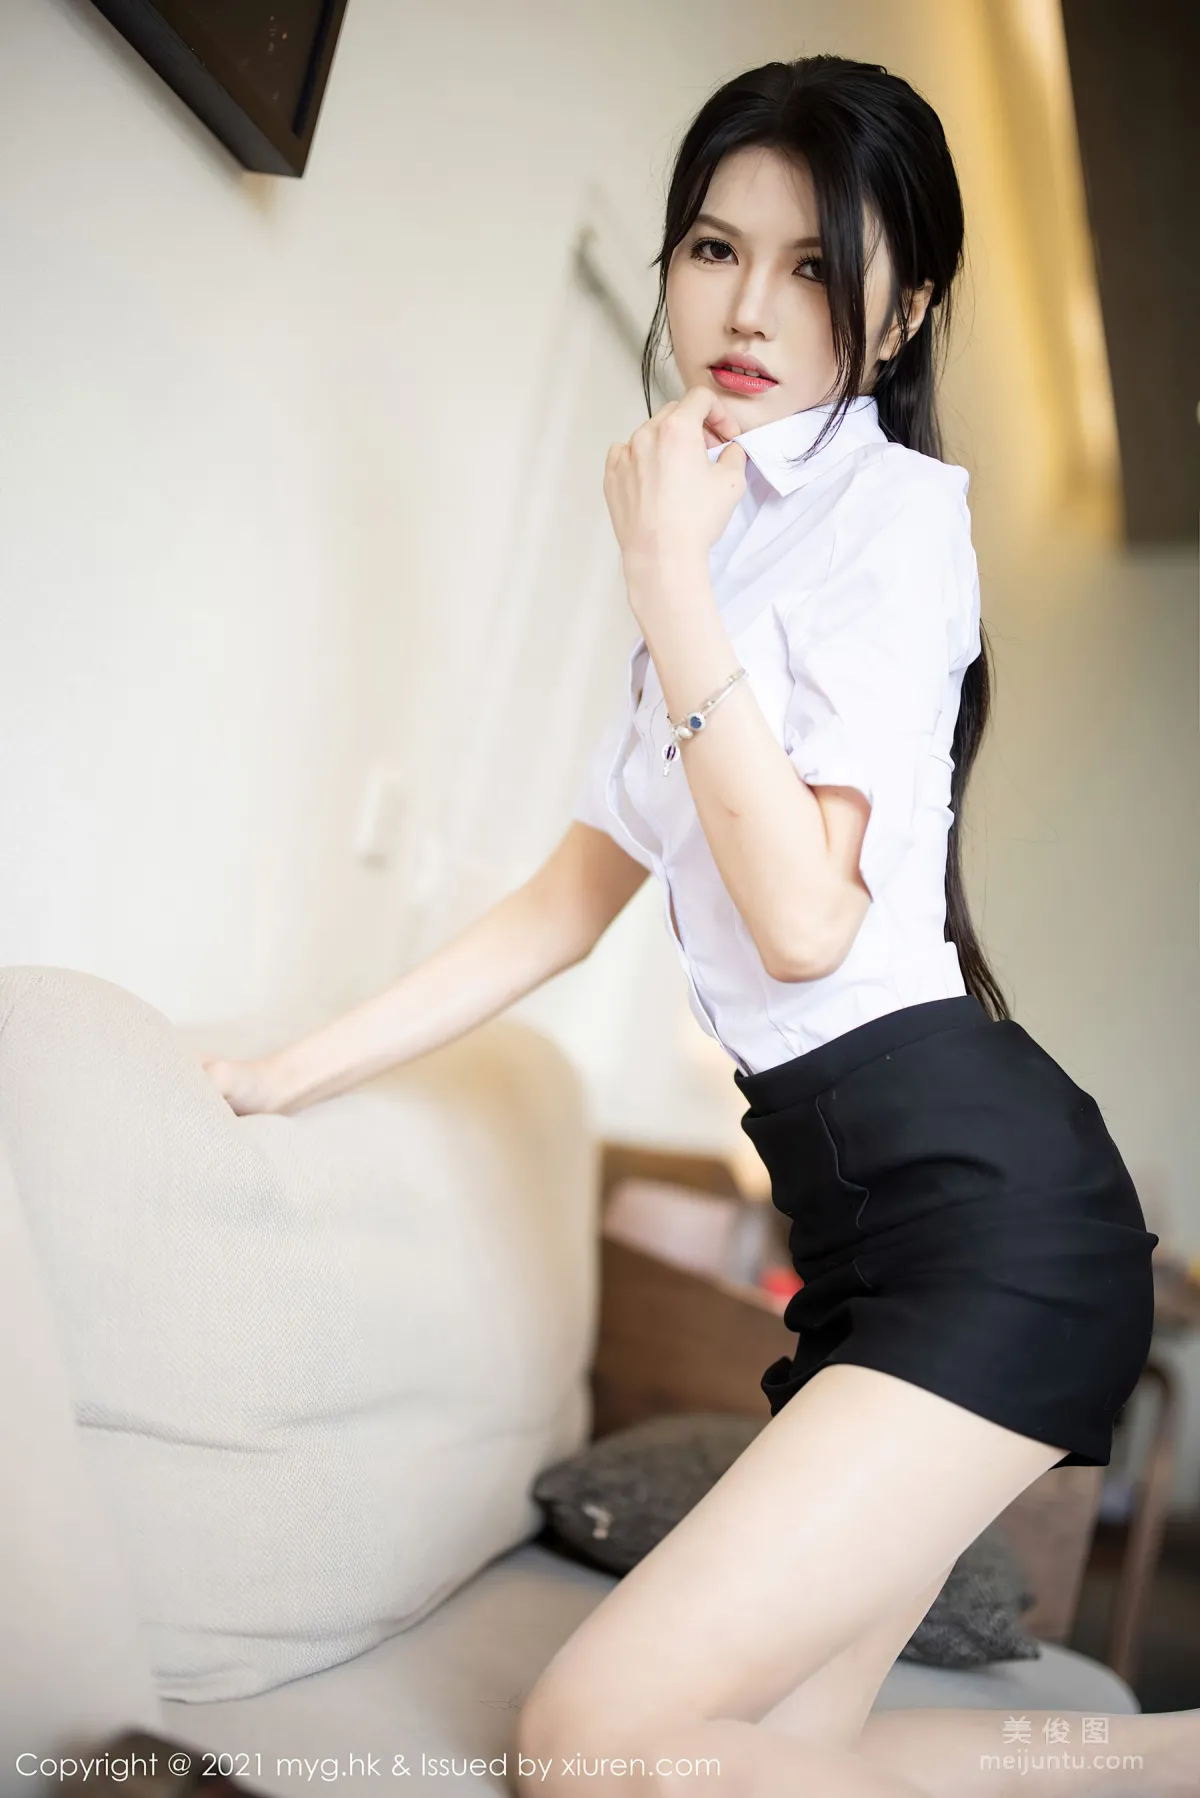 [美媛馆MyGirl] Vol.572 媛媛酱belle - 经典的白衬衫黑短裙系列13